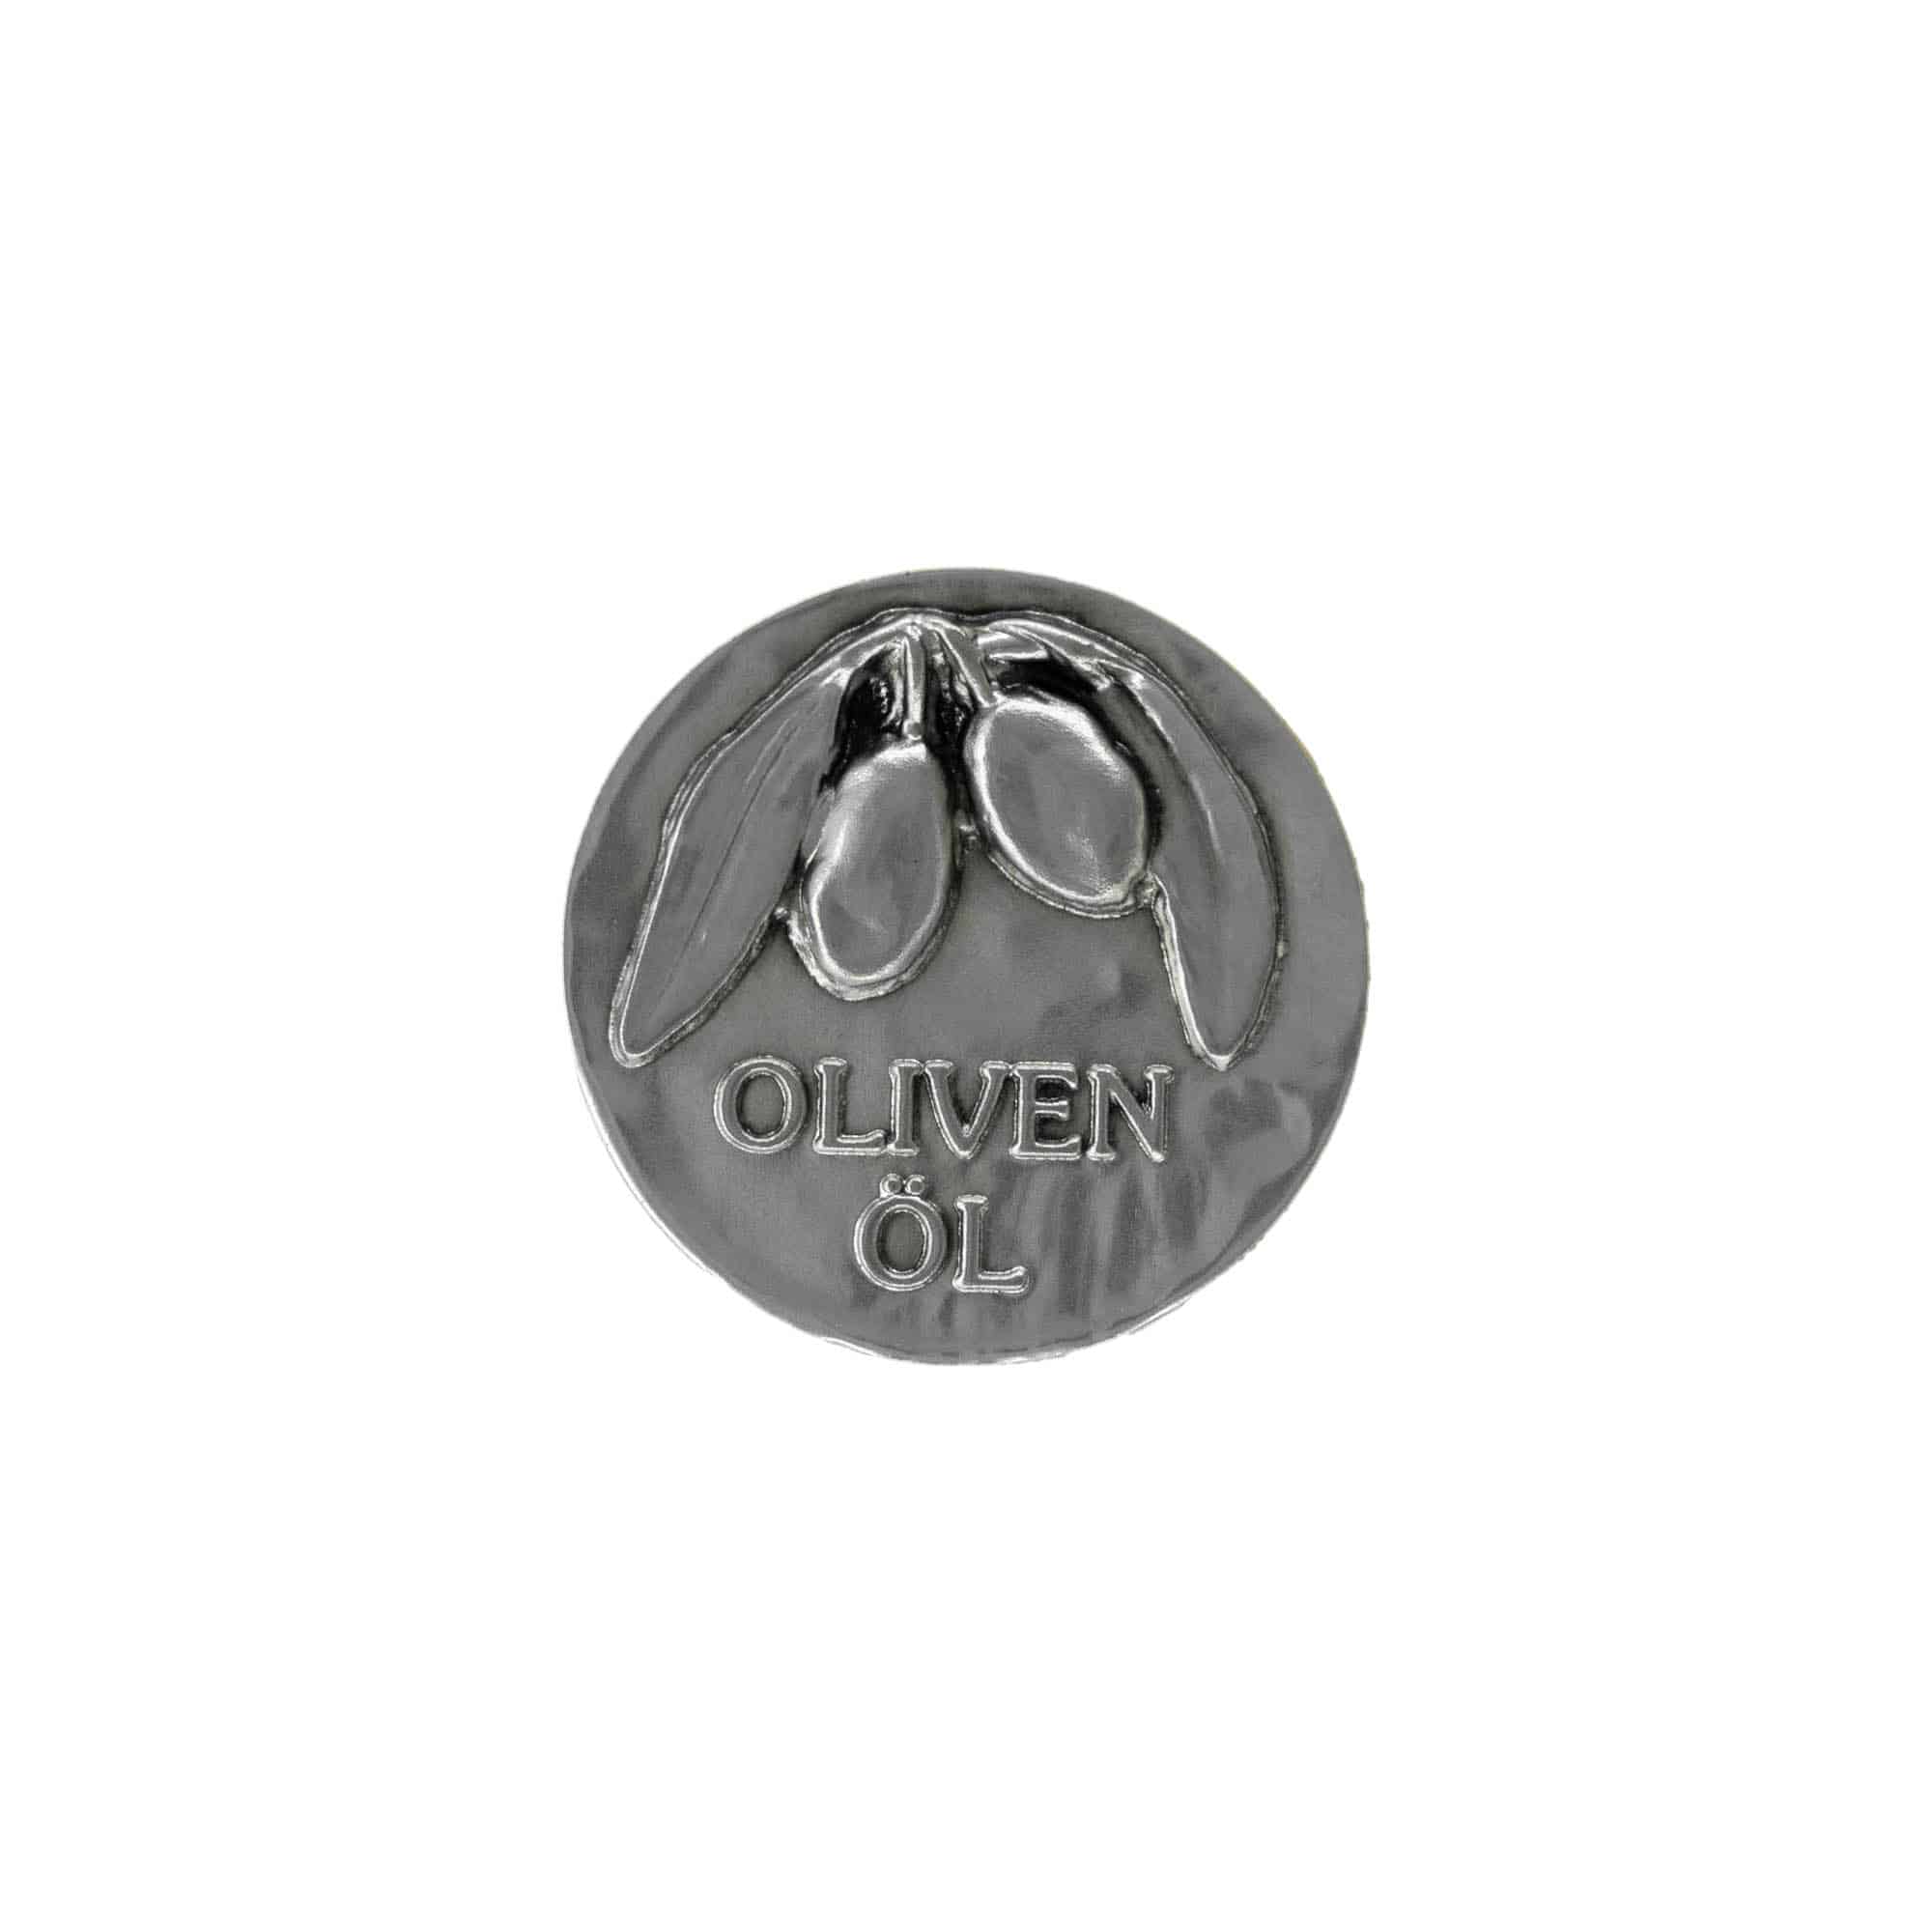 Tinetiket 'Olivenolie', kvadratisk, metal, sølv